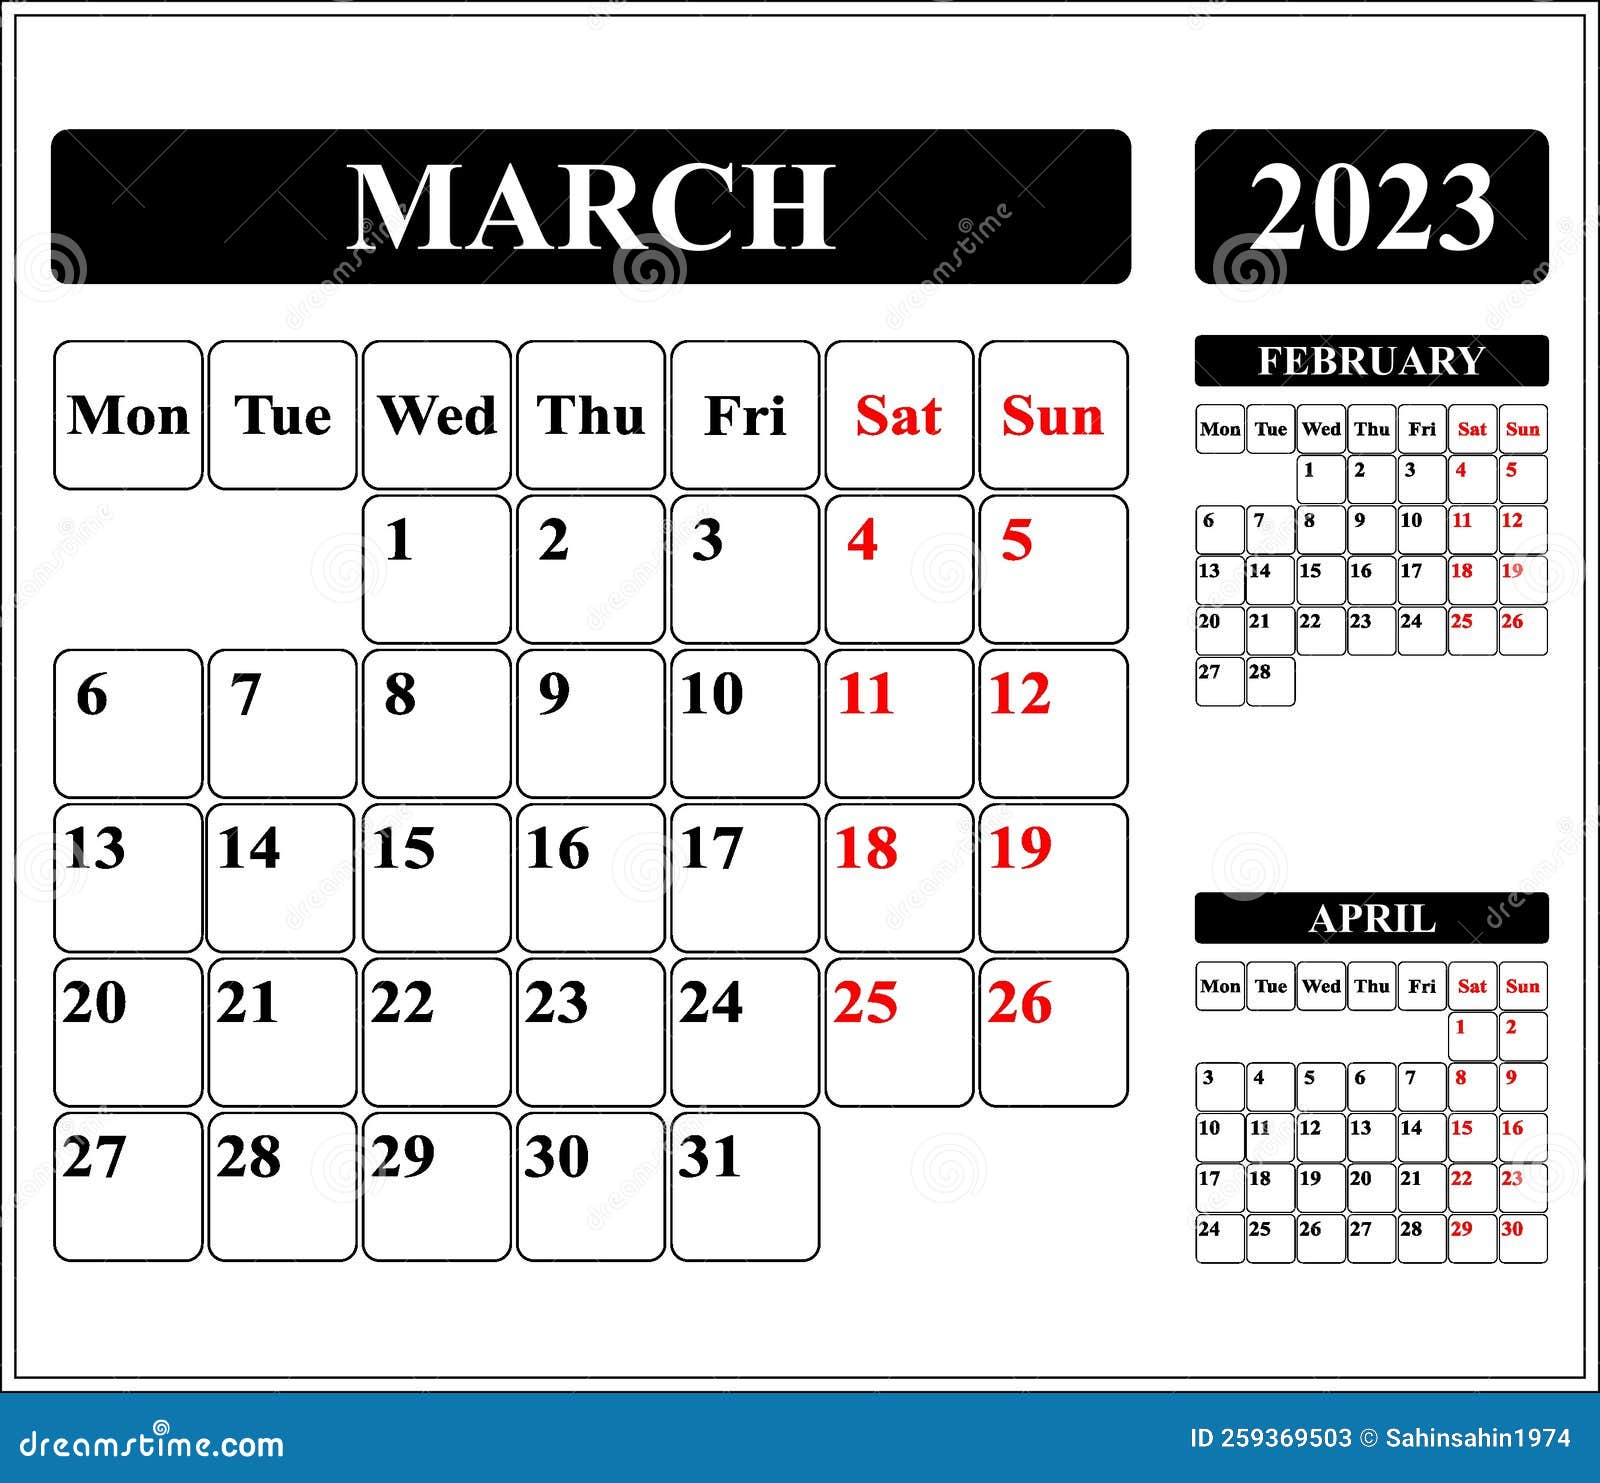 Lịch tháng 3 cho năm 2024 đã có sẵn! Nó cung cấp cho bạn tất cả các ngày trong tháng, giúp bạn có thể dễ dàng quản lý công việc và lịch trình của mình. Bạn sẽ yêu thiết kế đẹp mắt, tinh tế và không gian để ghi chú của chúng tôi. Hãy tải xuống miễn phí ngay hôm nay!